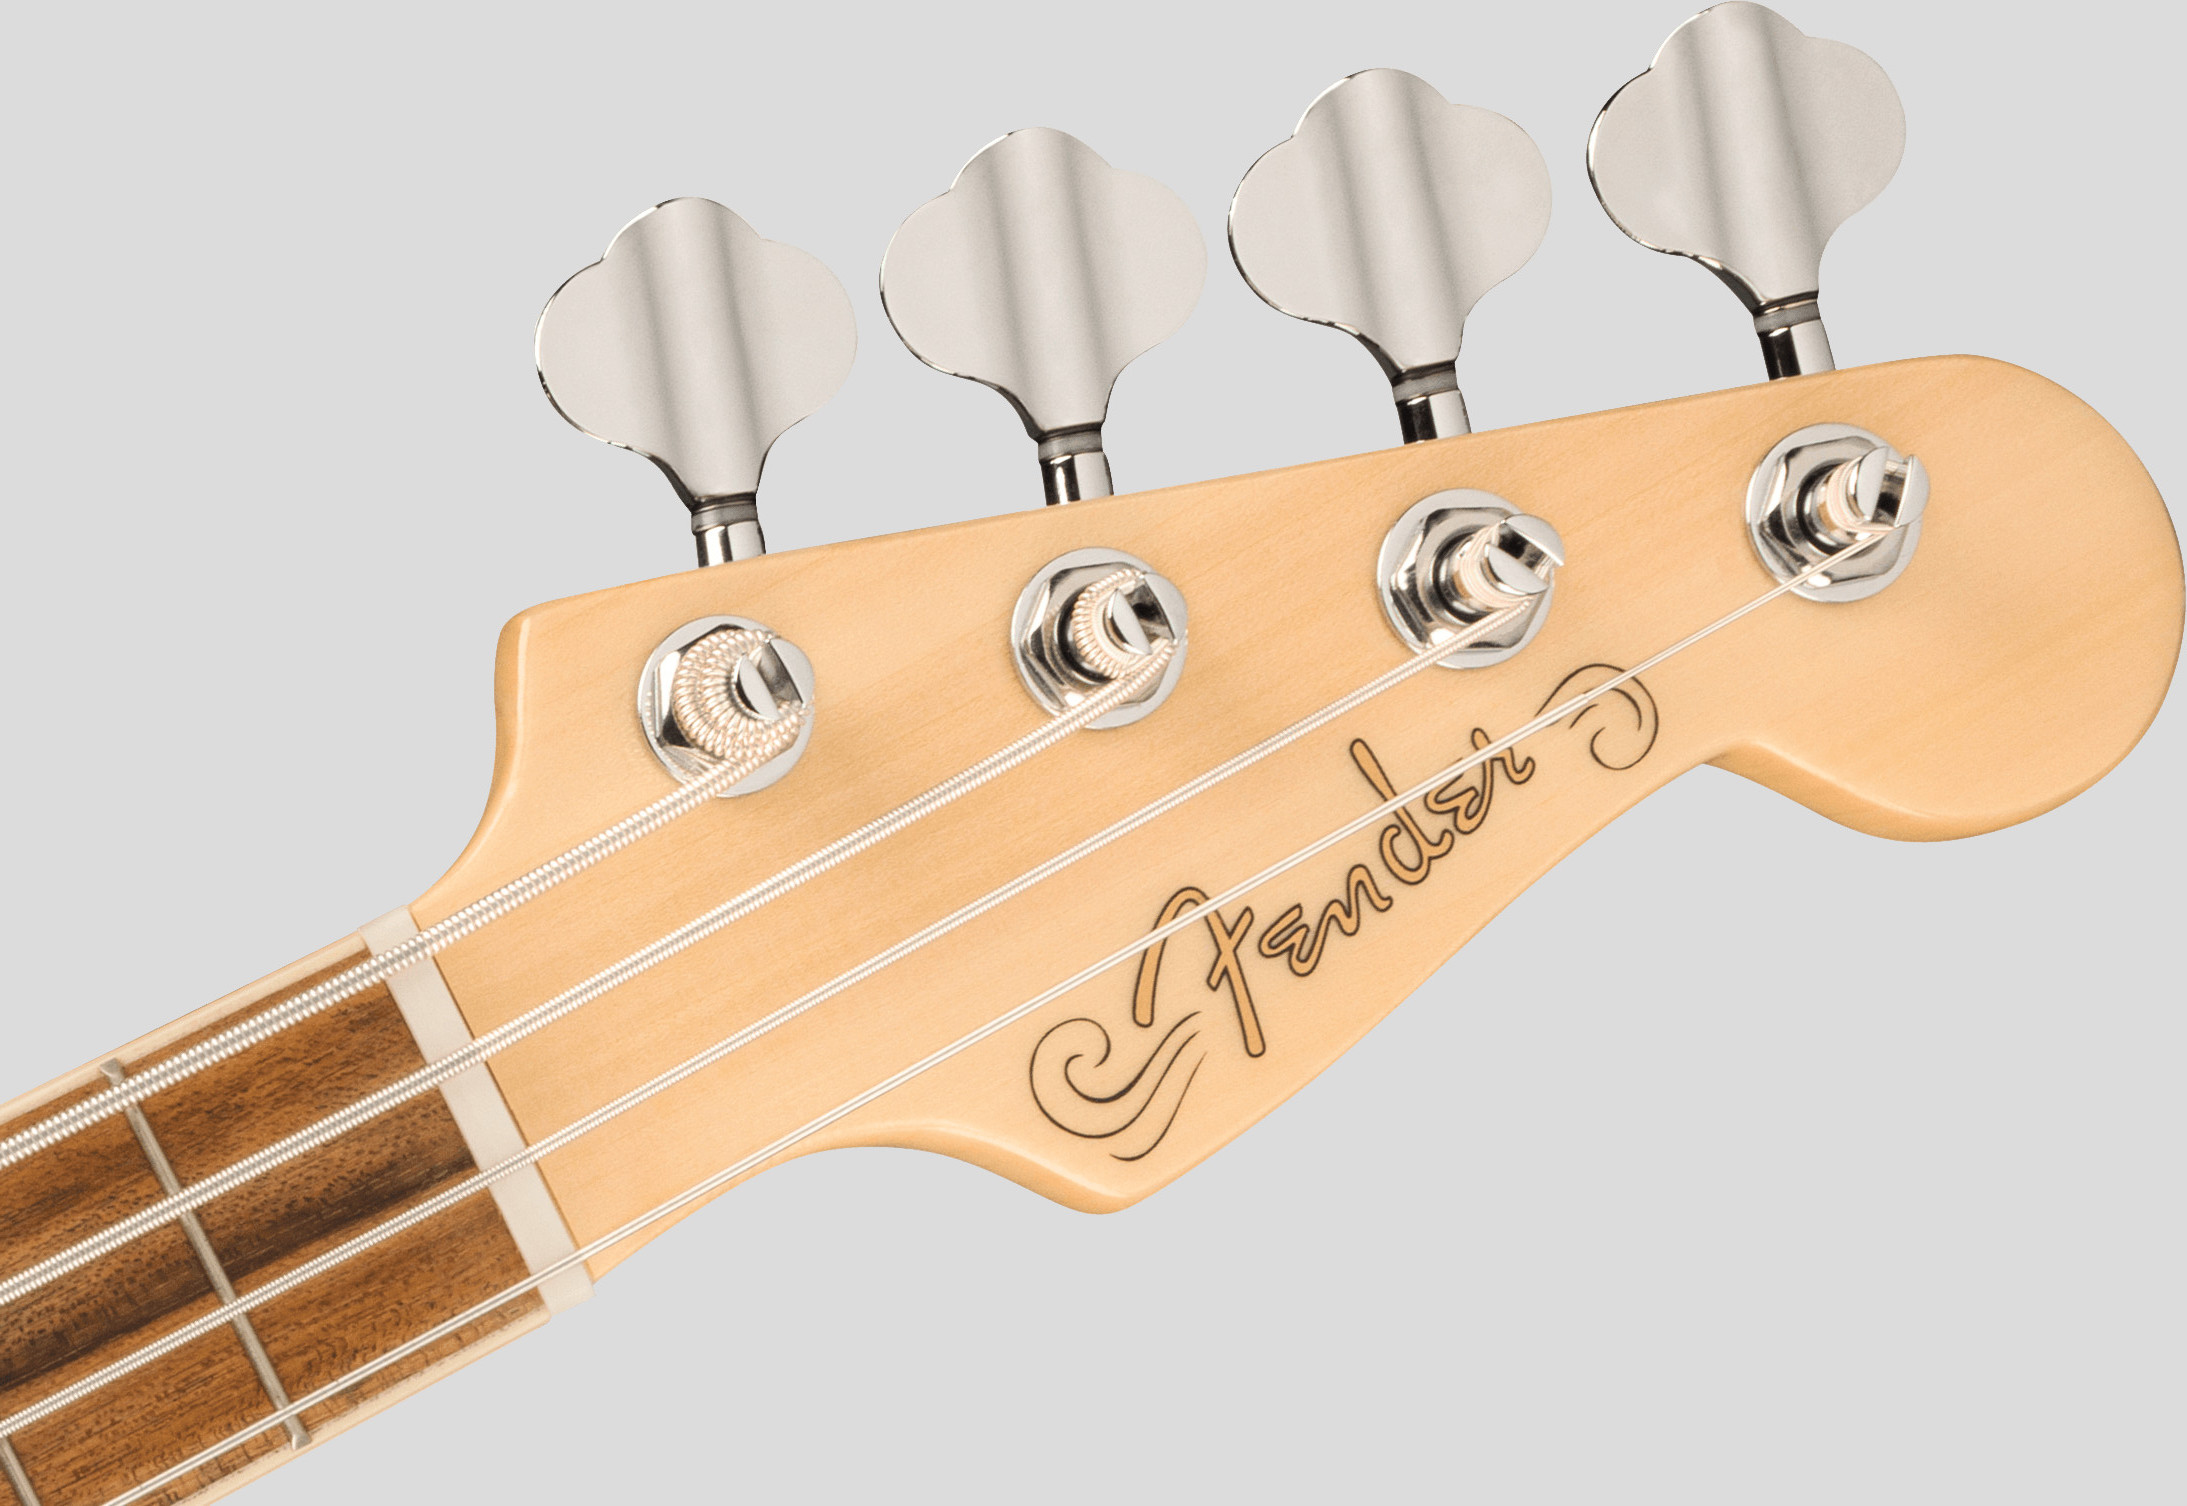 Fender Fullerton Precision Bass Ukulele Olympic White 5